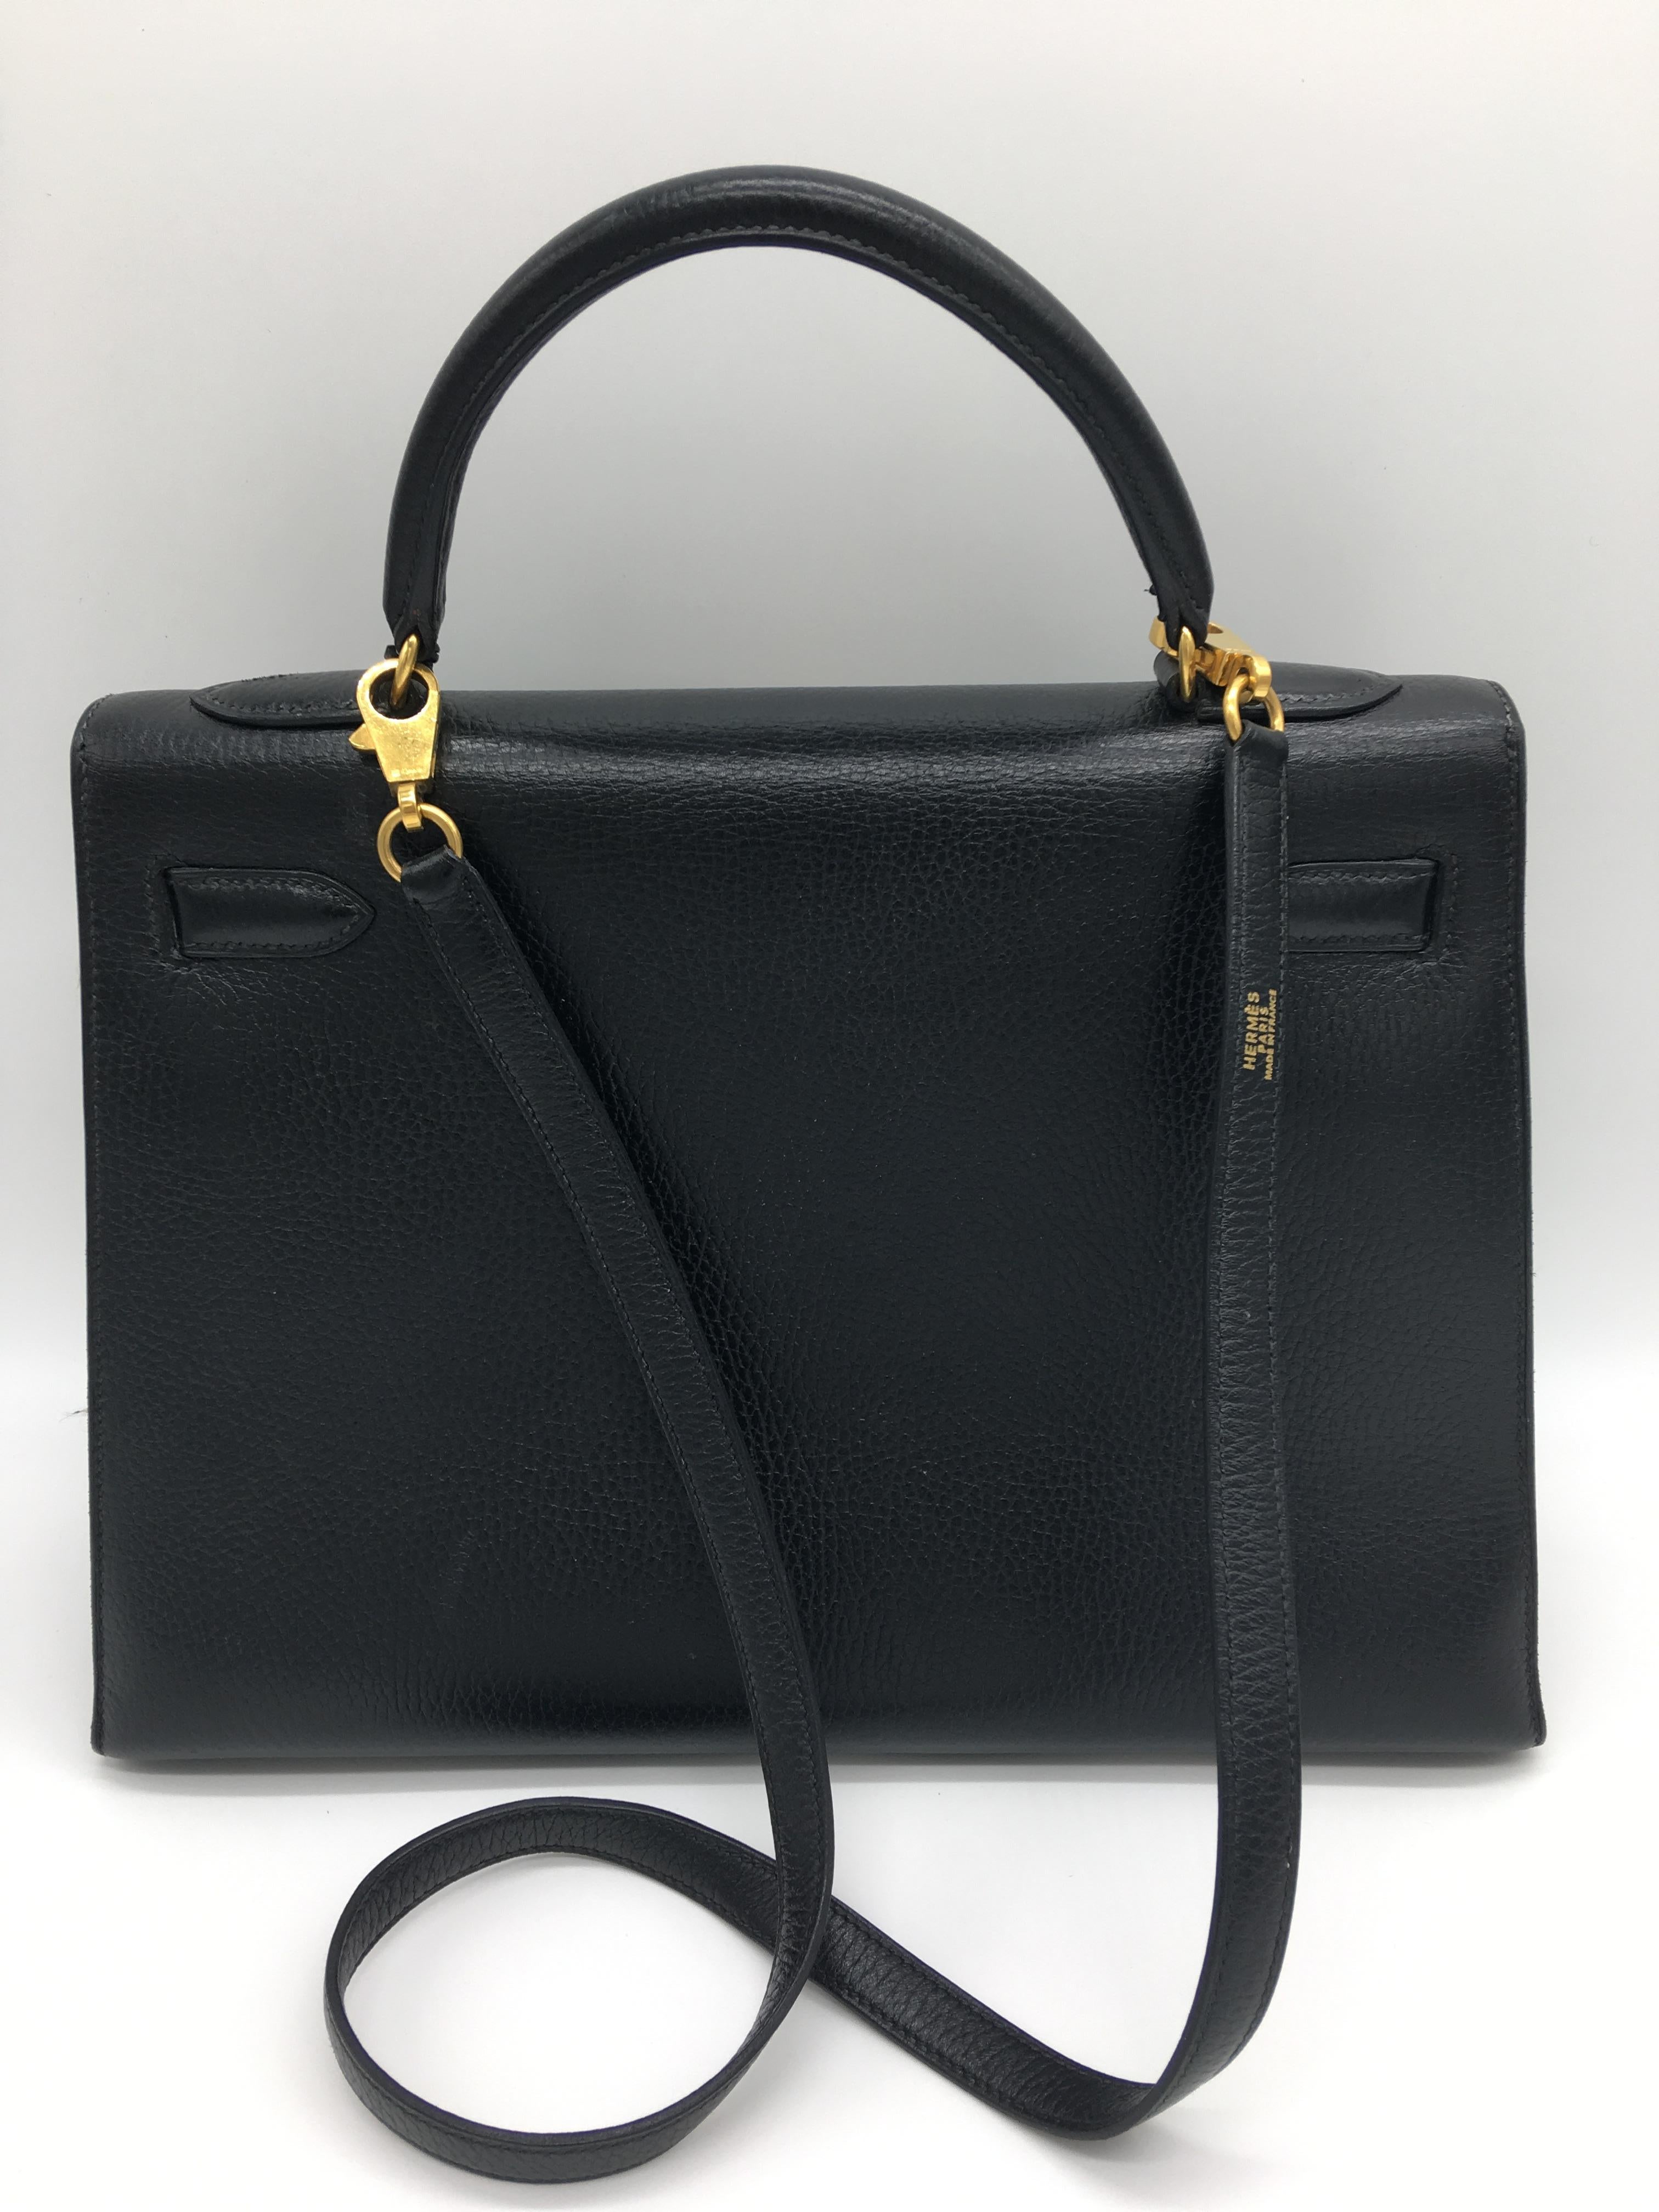 Wahrscheinlich eine der glamourösesten und berühmtesten Hermes-Taschen - eine schwarze Kelly mit Goldbeschlägen im strukturierten Sellier-Design mit äußeren Nähten, die ihr einen besonders markanten Look verleihen. Dies ist eine 32cm Black Kelly